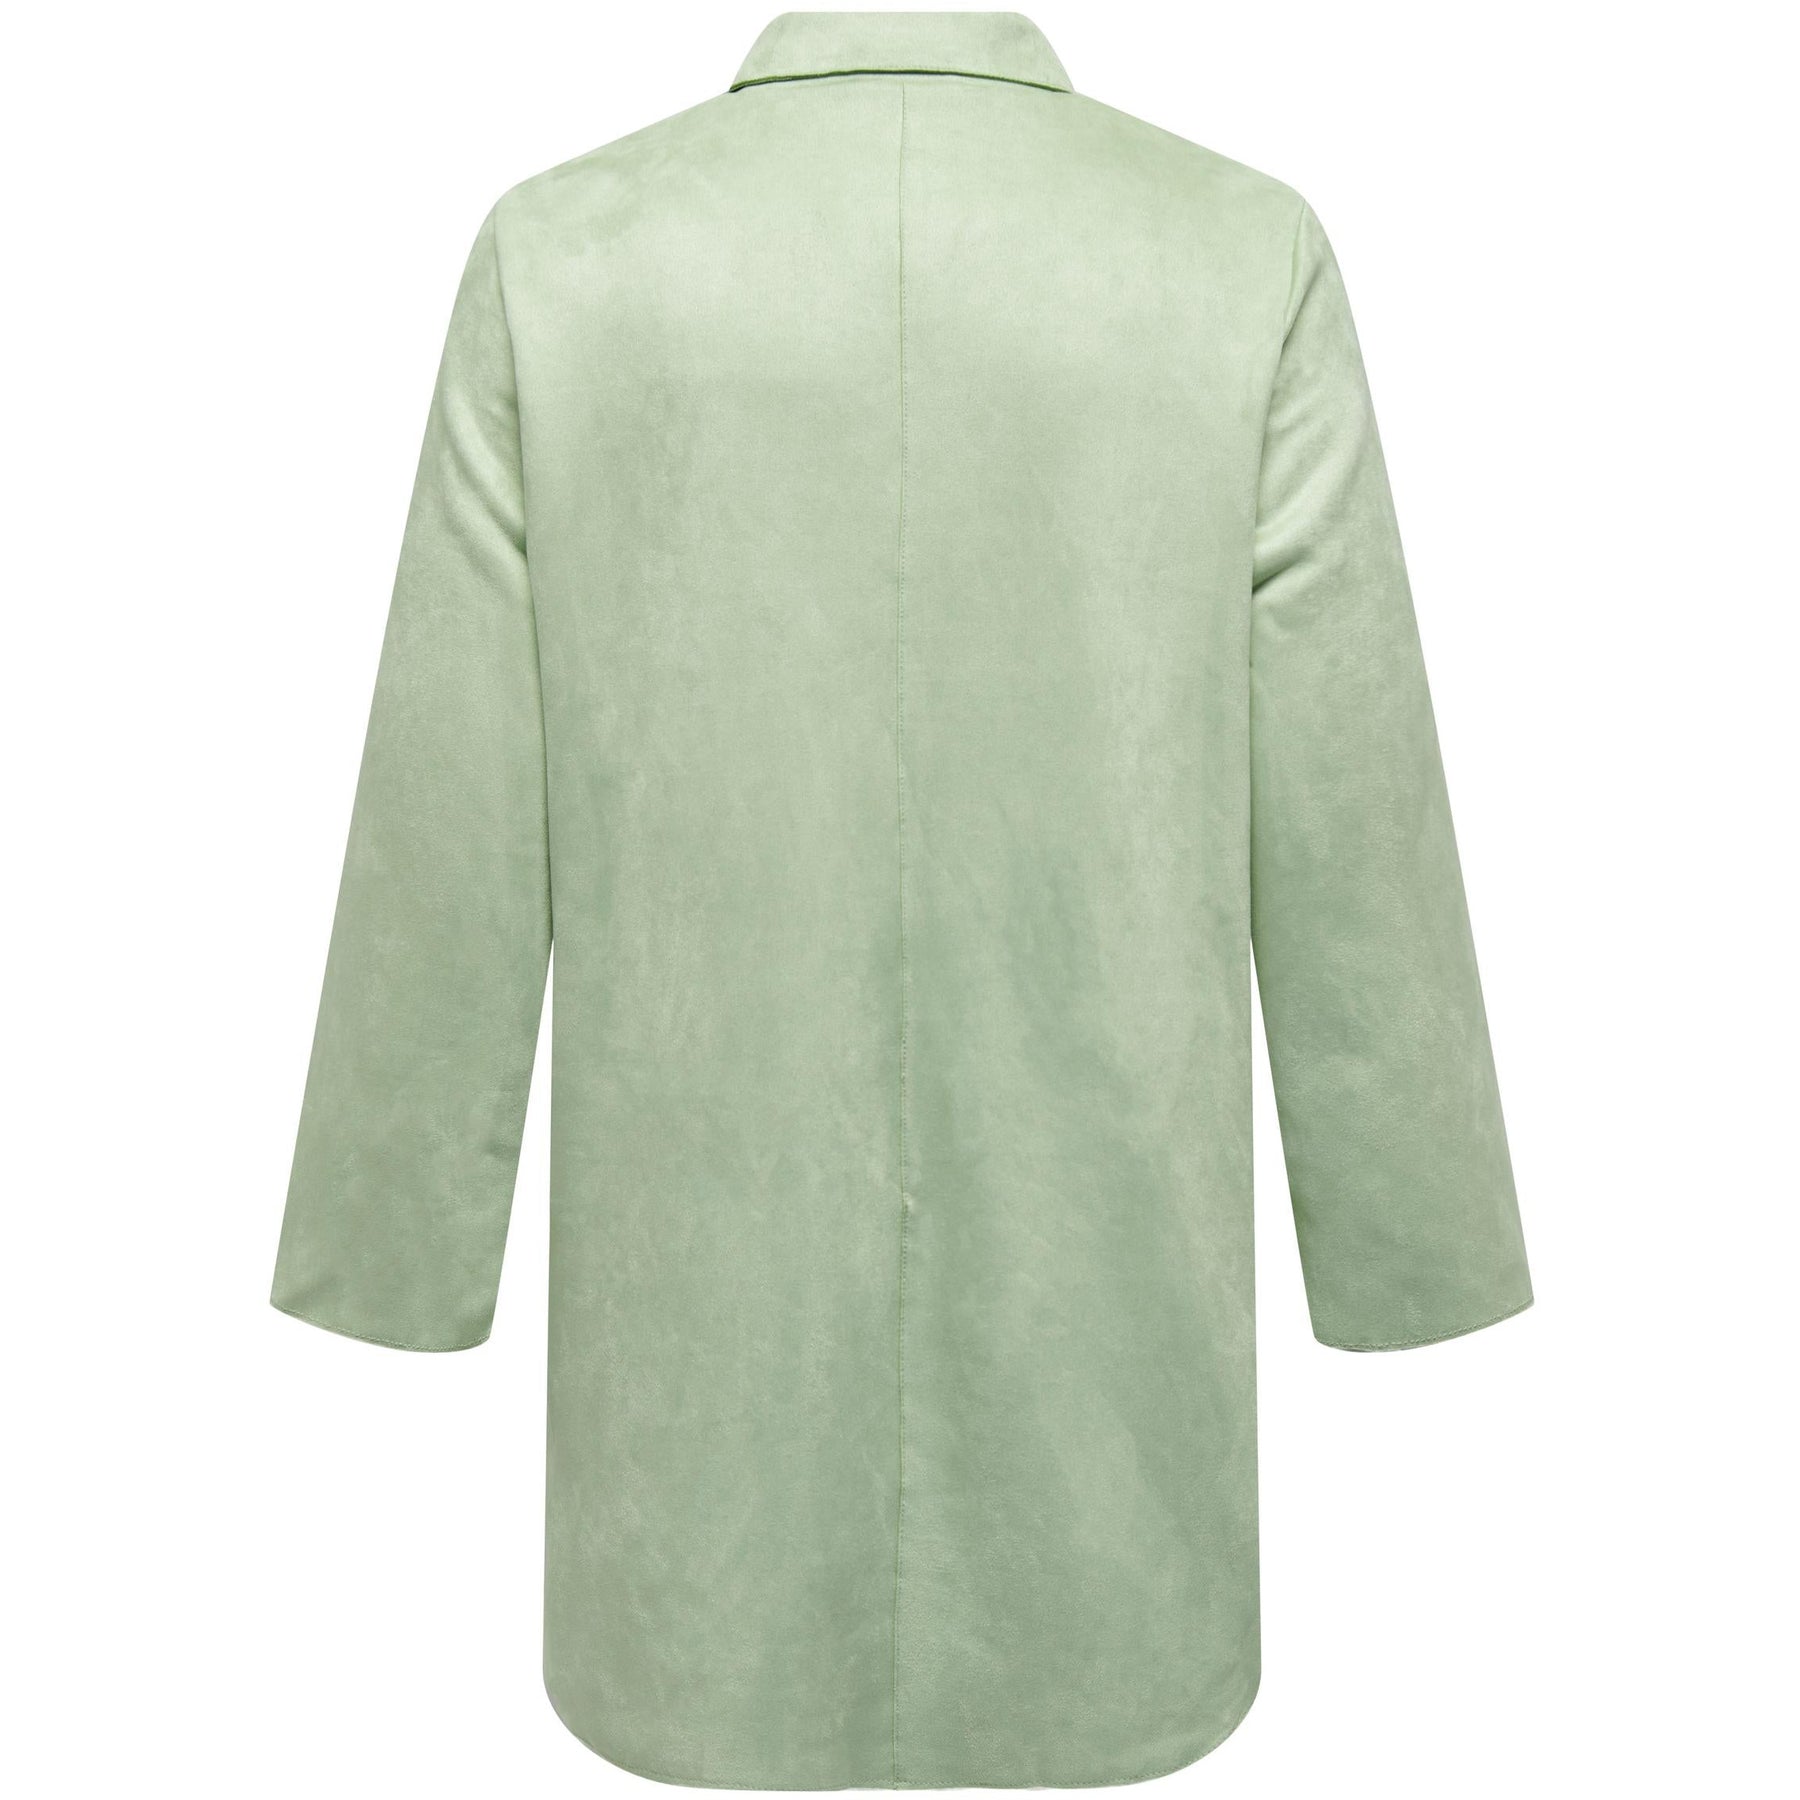 Only Joline Faux Suede Coat in Green - Wardrobe Plus